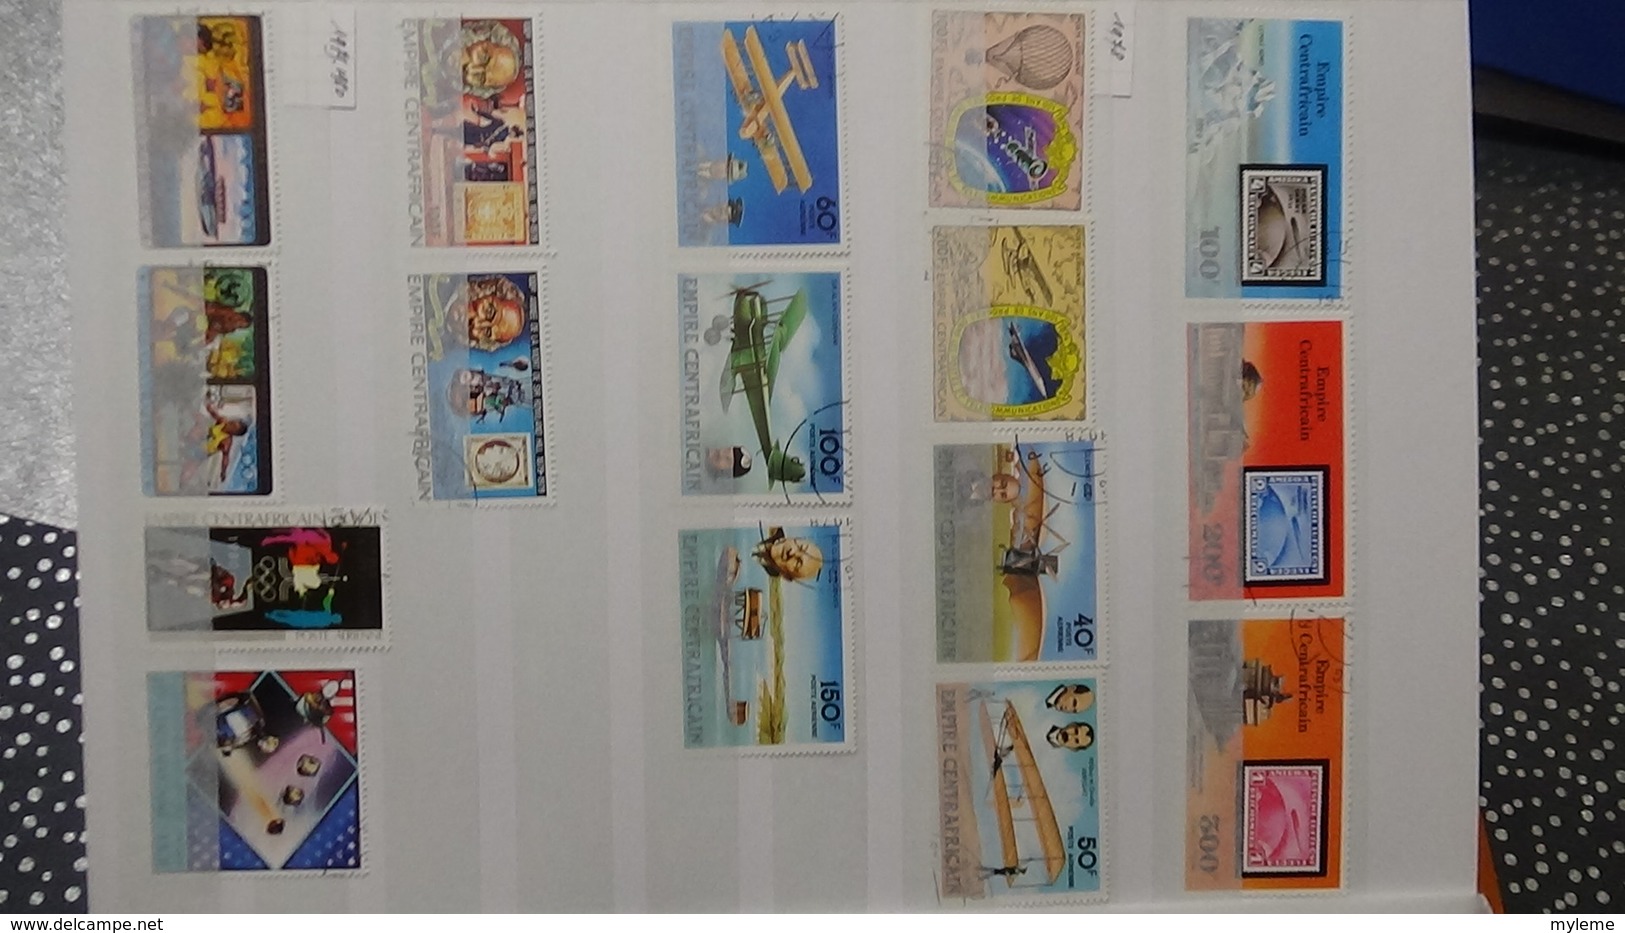 B382 Collection timbres et blocs oblitérés de divers pays d'Afrique. A saisir !!!